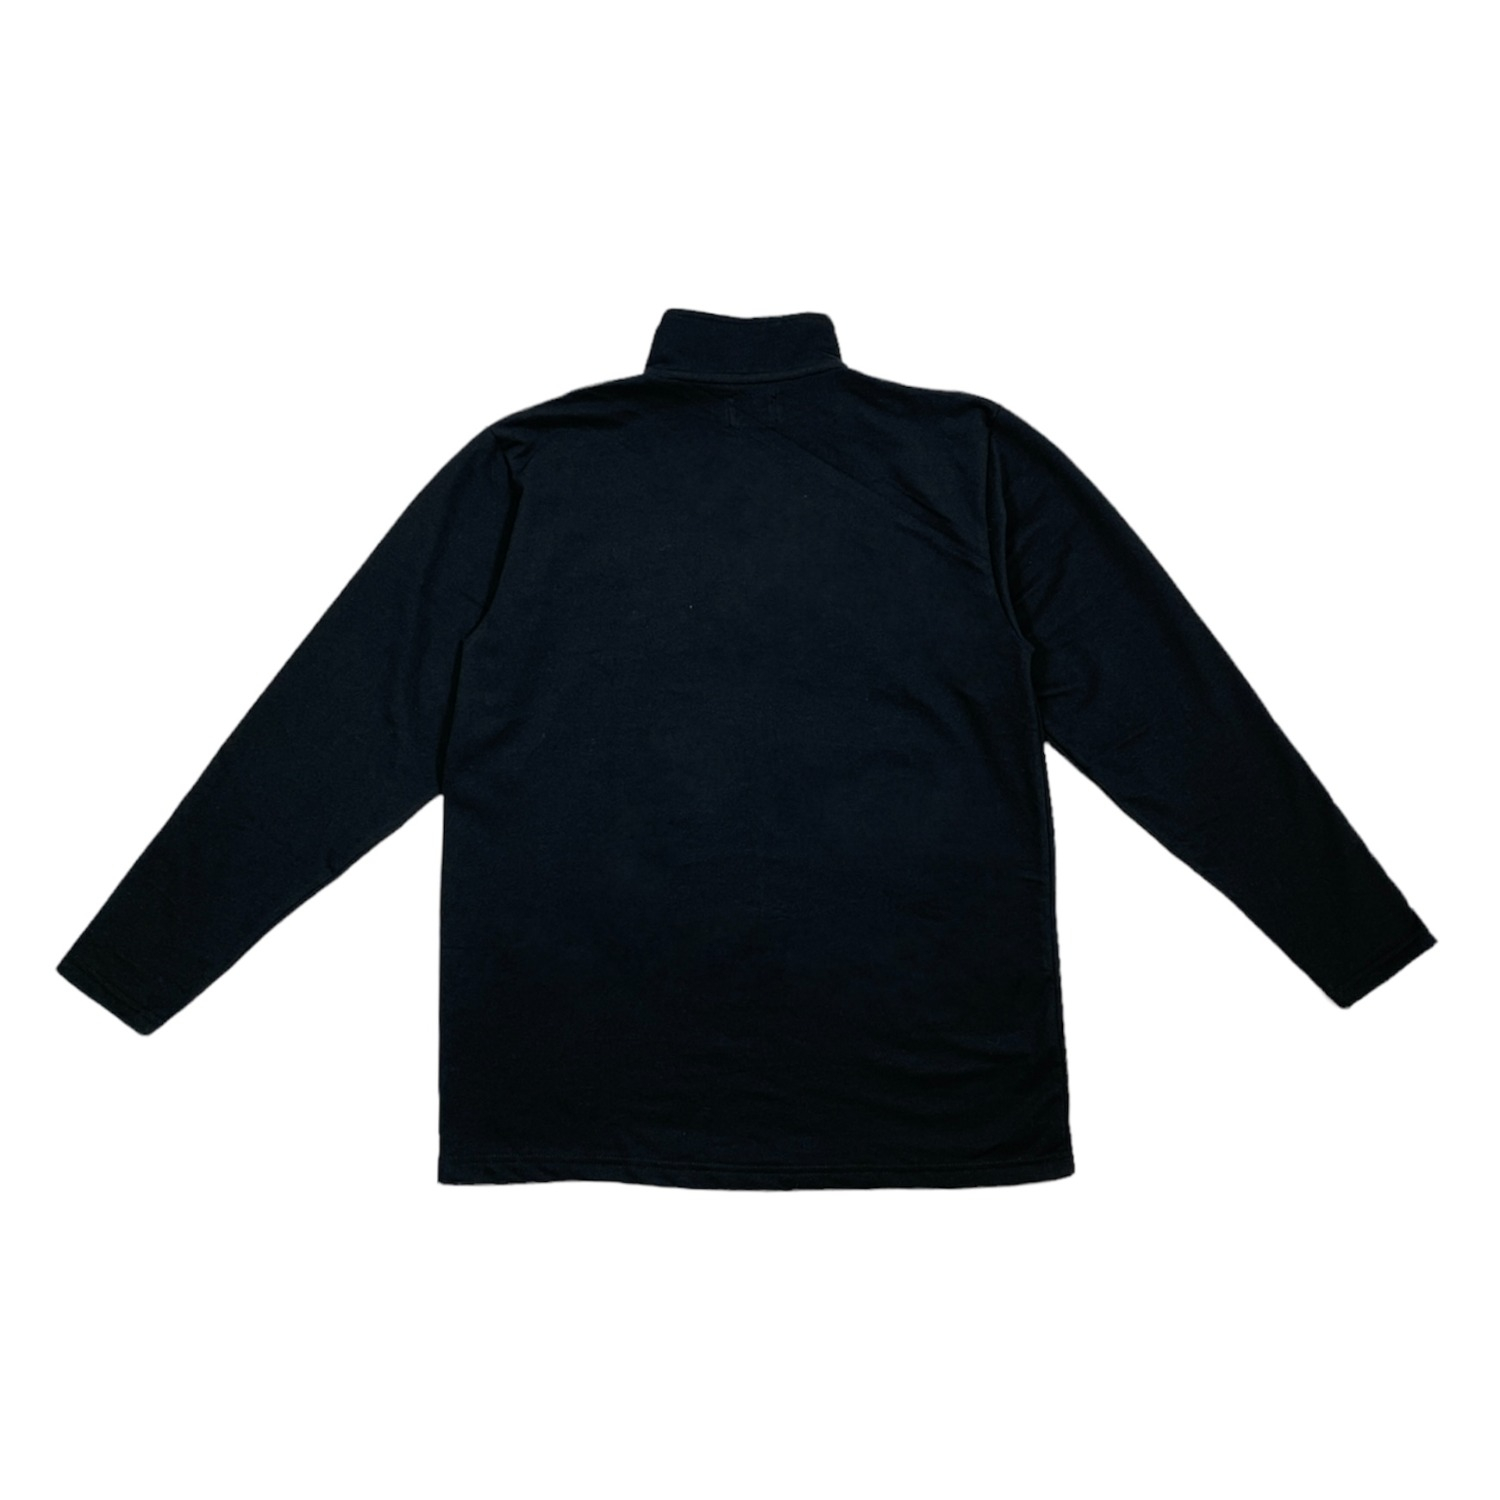 Shawn Polo Sweatshirt (Black)